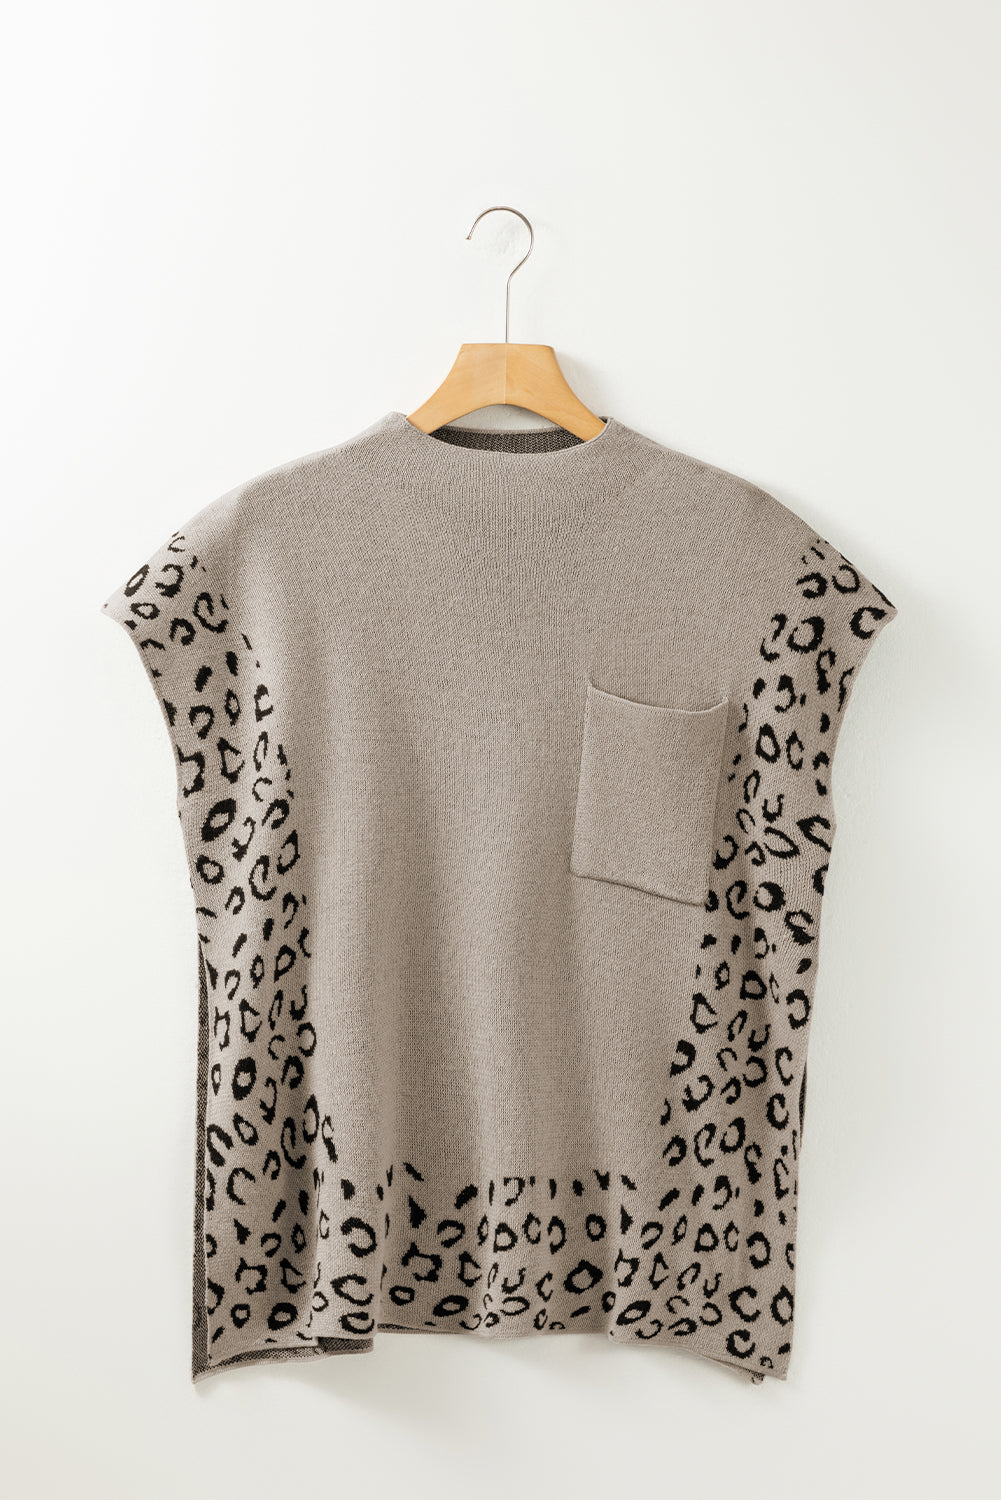 Dimno siv ohlapen pulover z visokim izrezom in kratkimi rokavi, obrobljenim z leopardjem